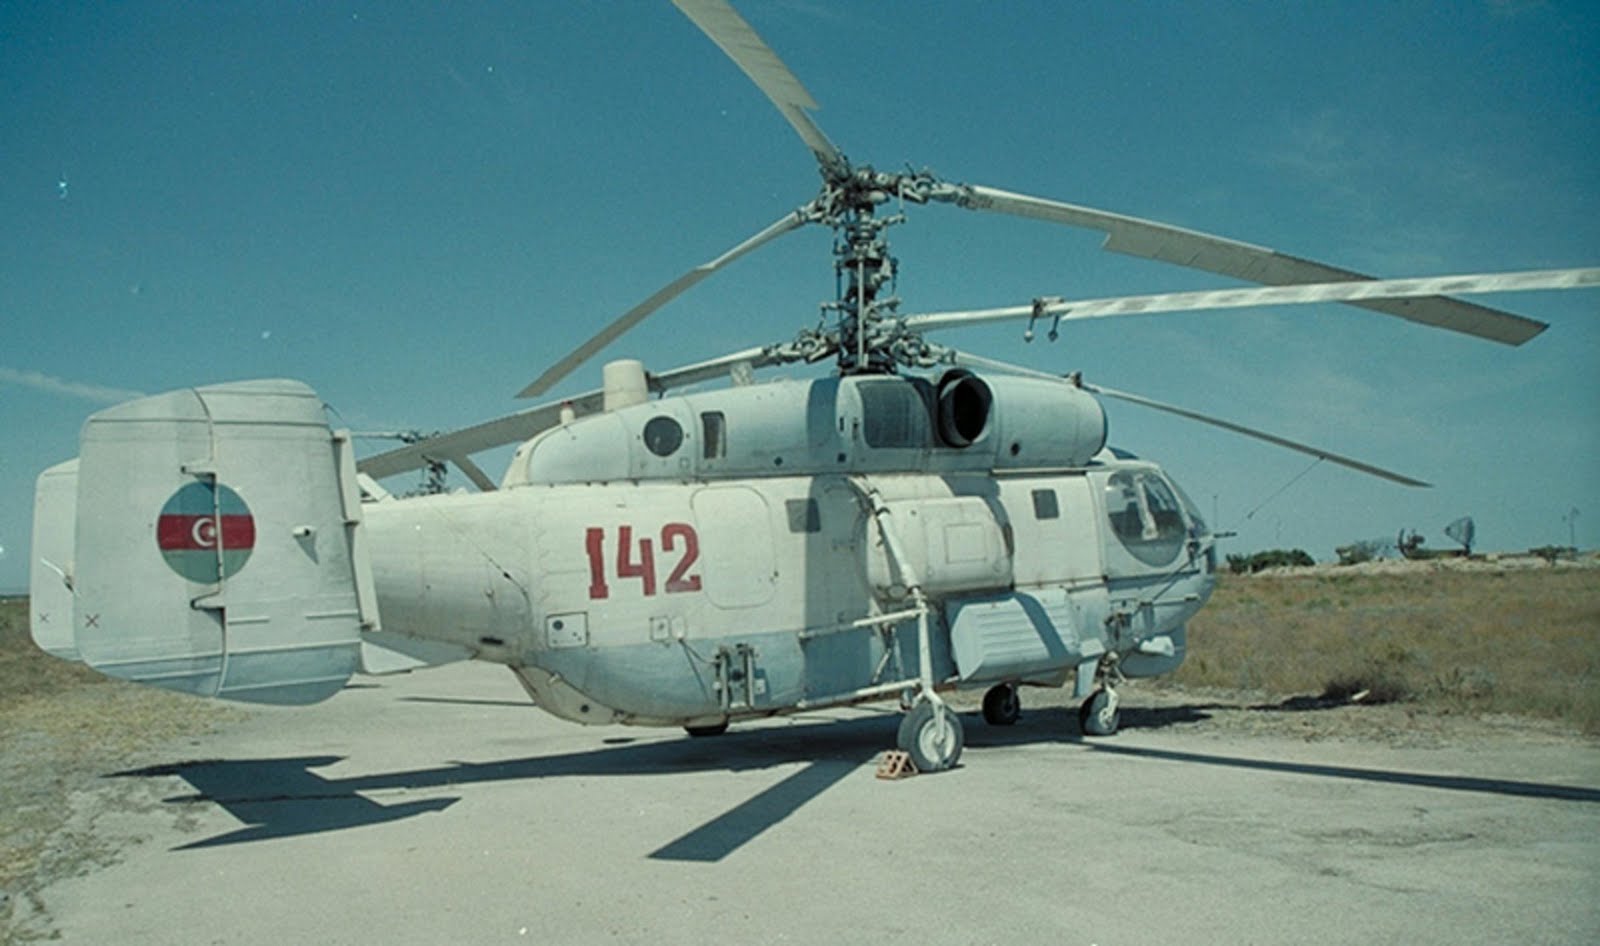 2 ка 27. Многоцелевые корабельные вертолеты ка-27. Ка-32 вертолёт ВМФ. Ка-27пс вертолет. Ка-27 вертолёты СССР.